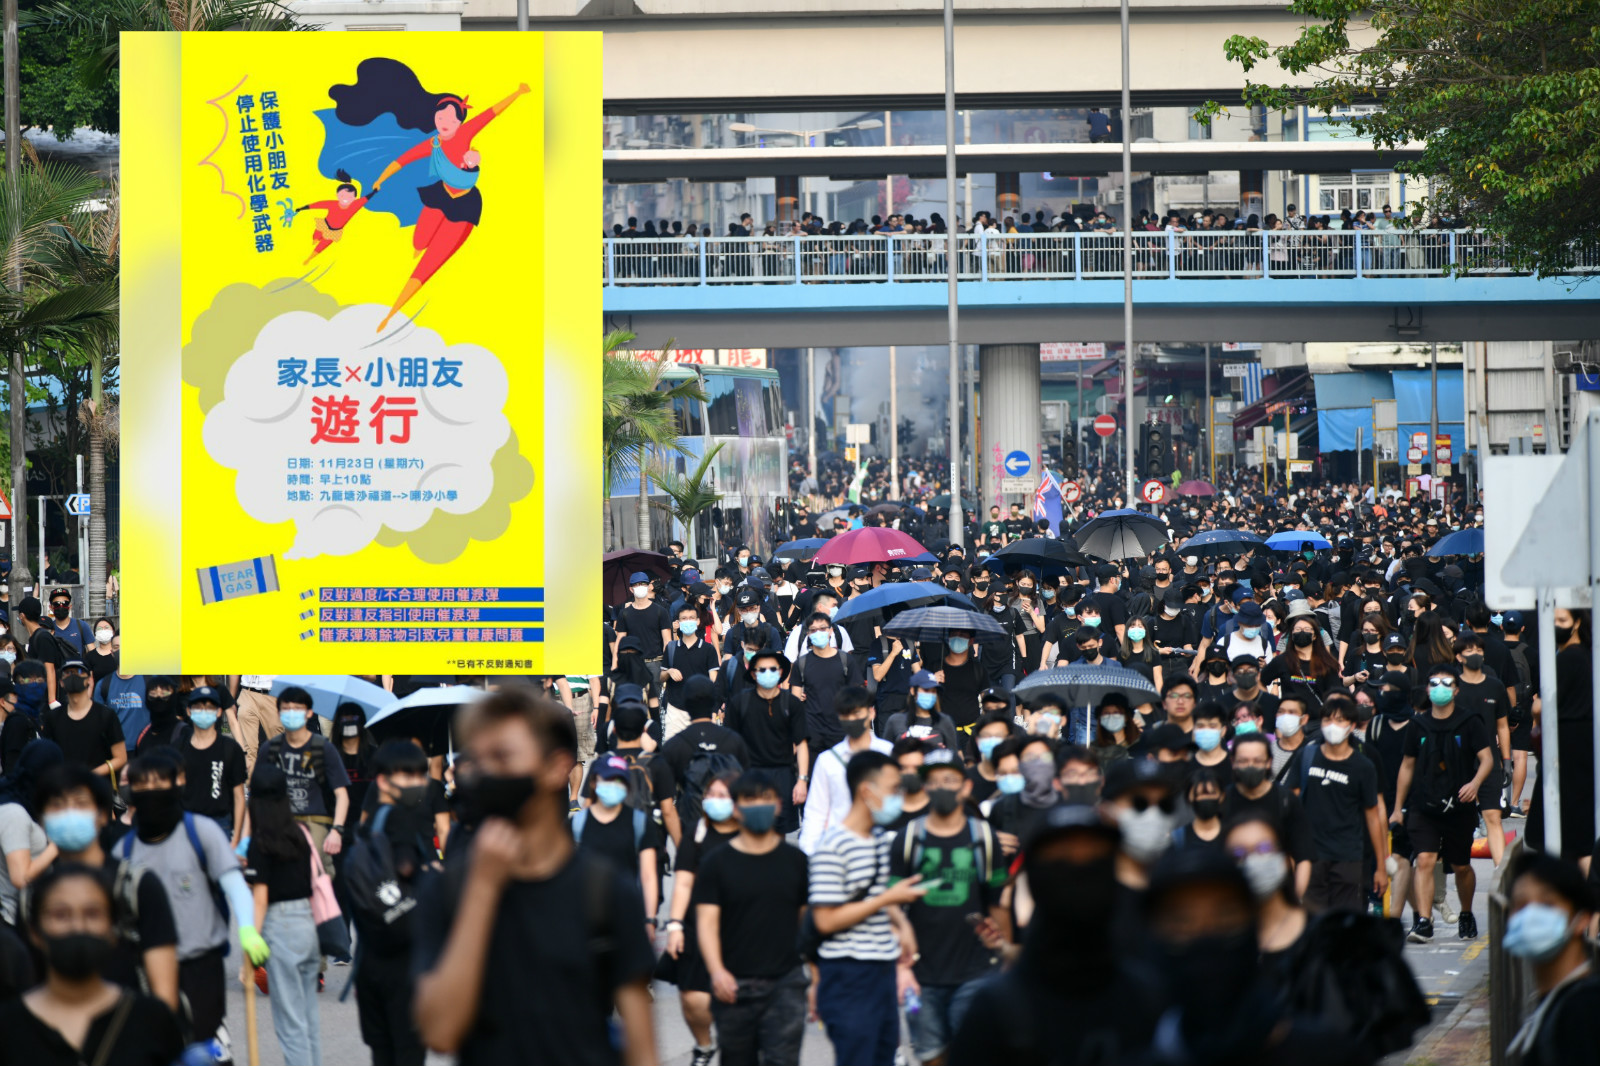 【修例风波】网民明九龙塘游行 「和你塞」行动取消